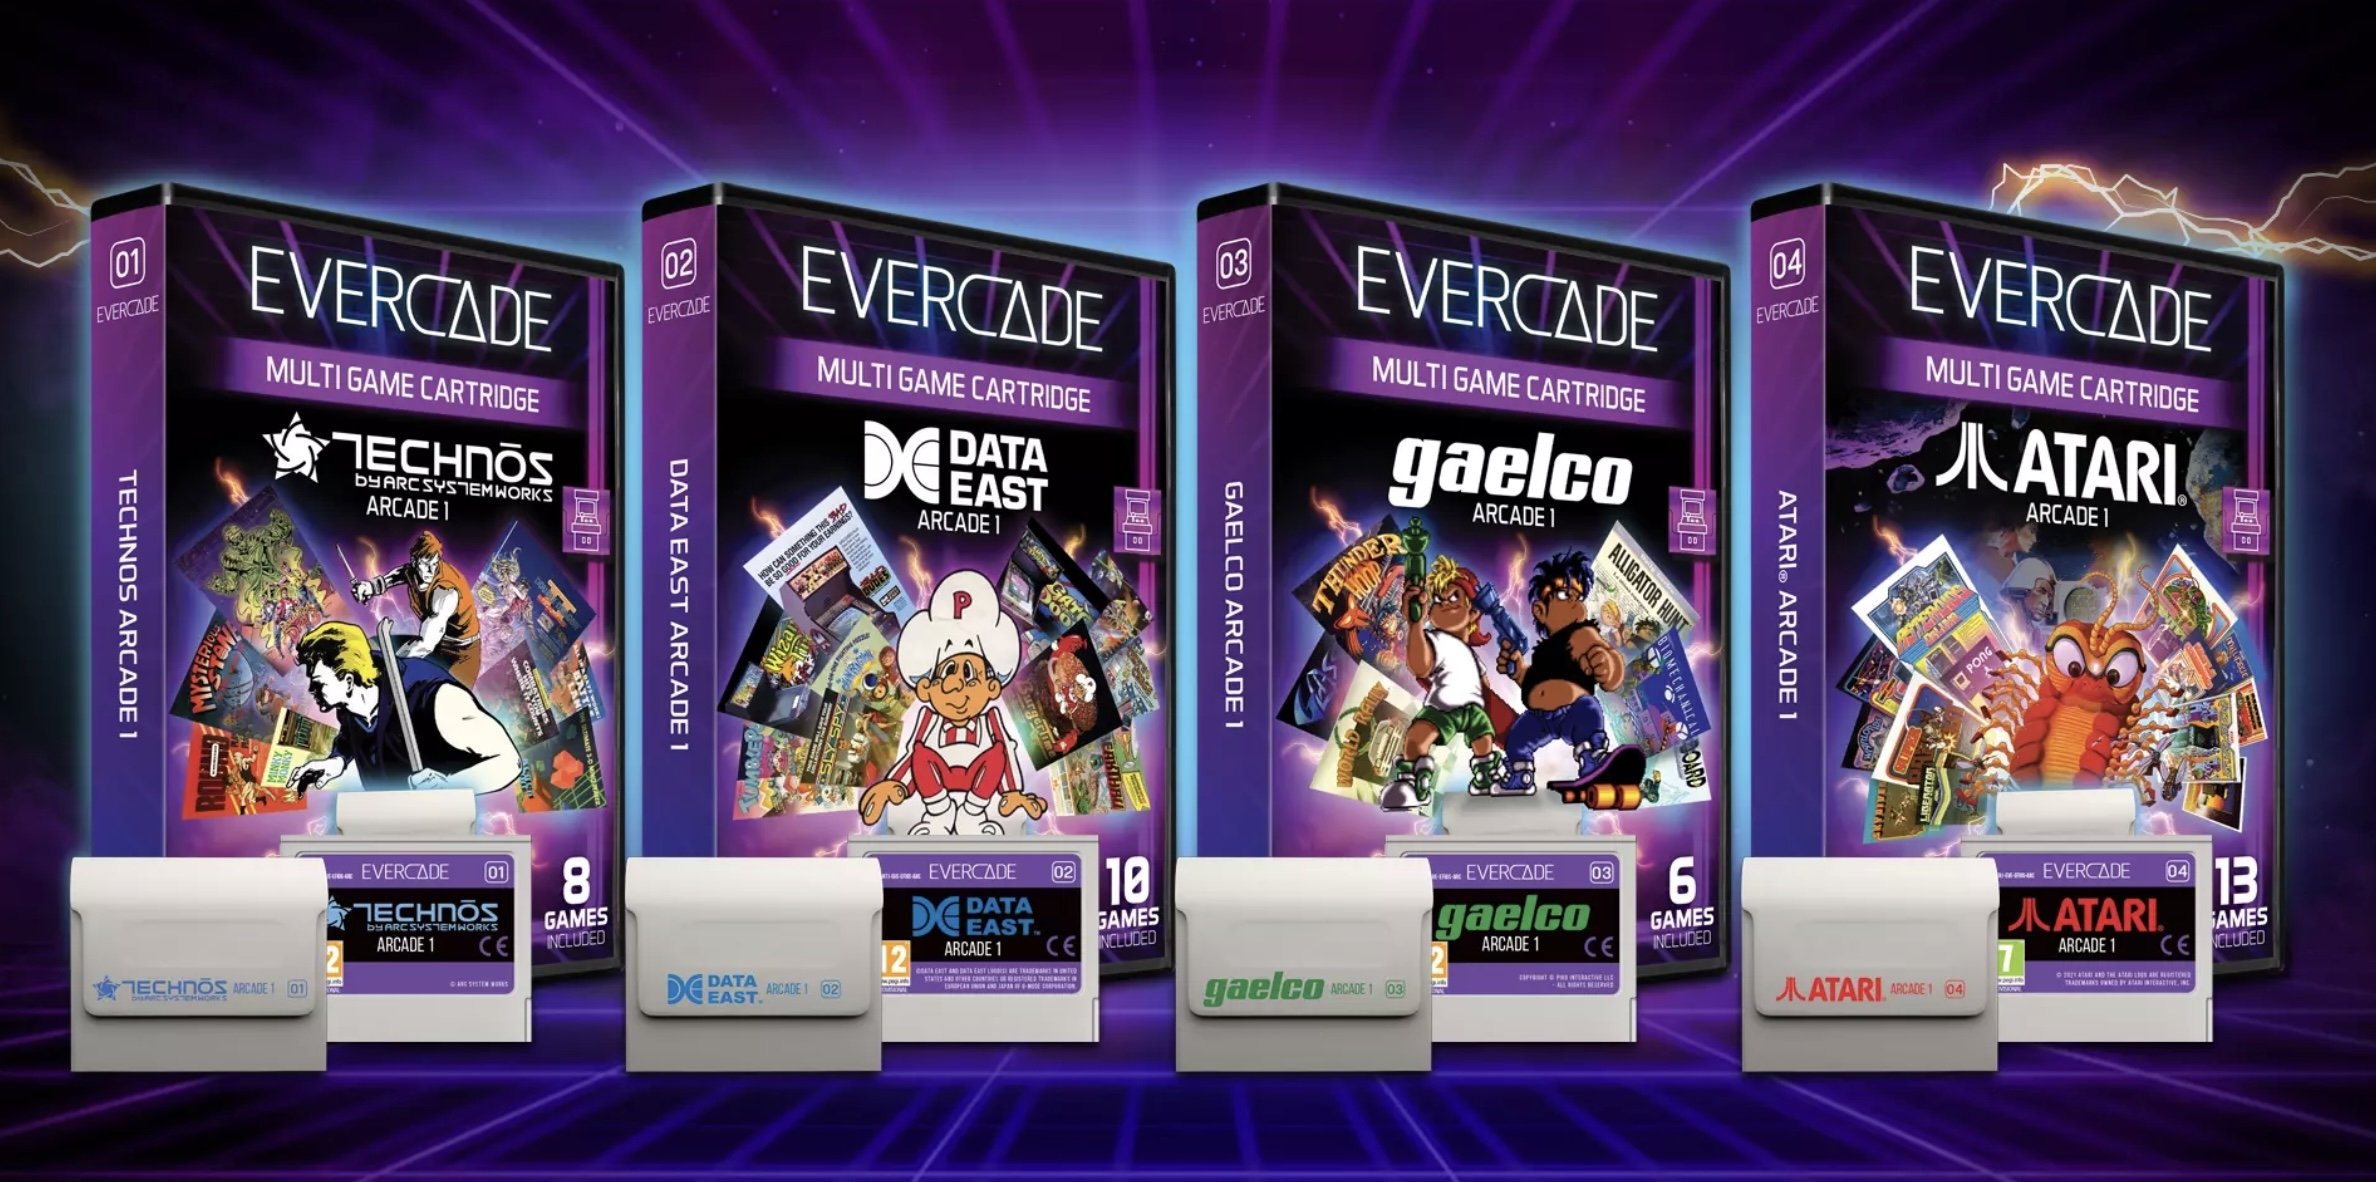 Oyun setleri, Evercade'nin tescilli kartuşlarında ayrı olarak satılır.  (Blaze Entertainment'ın izniyle)